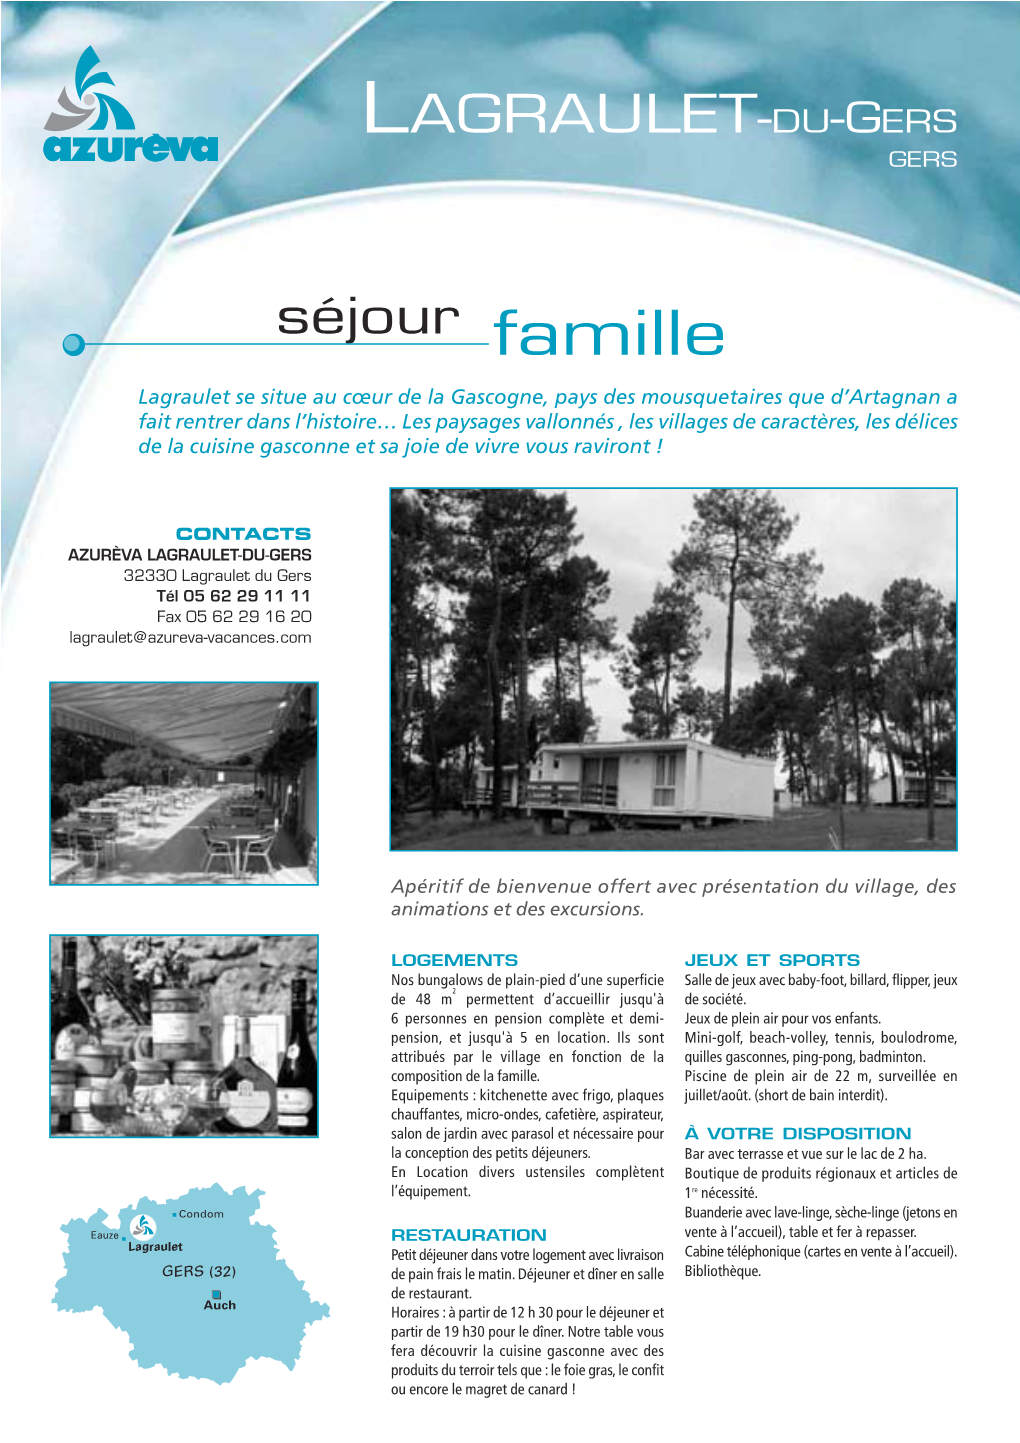 Lagraulet Du Gers Tél 05 62 29 11 11 Fax 05 62 29 16 20 Lagraulet@Azureva-Vacances.Com